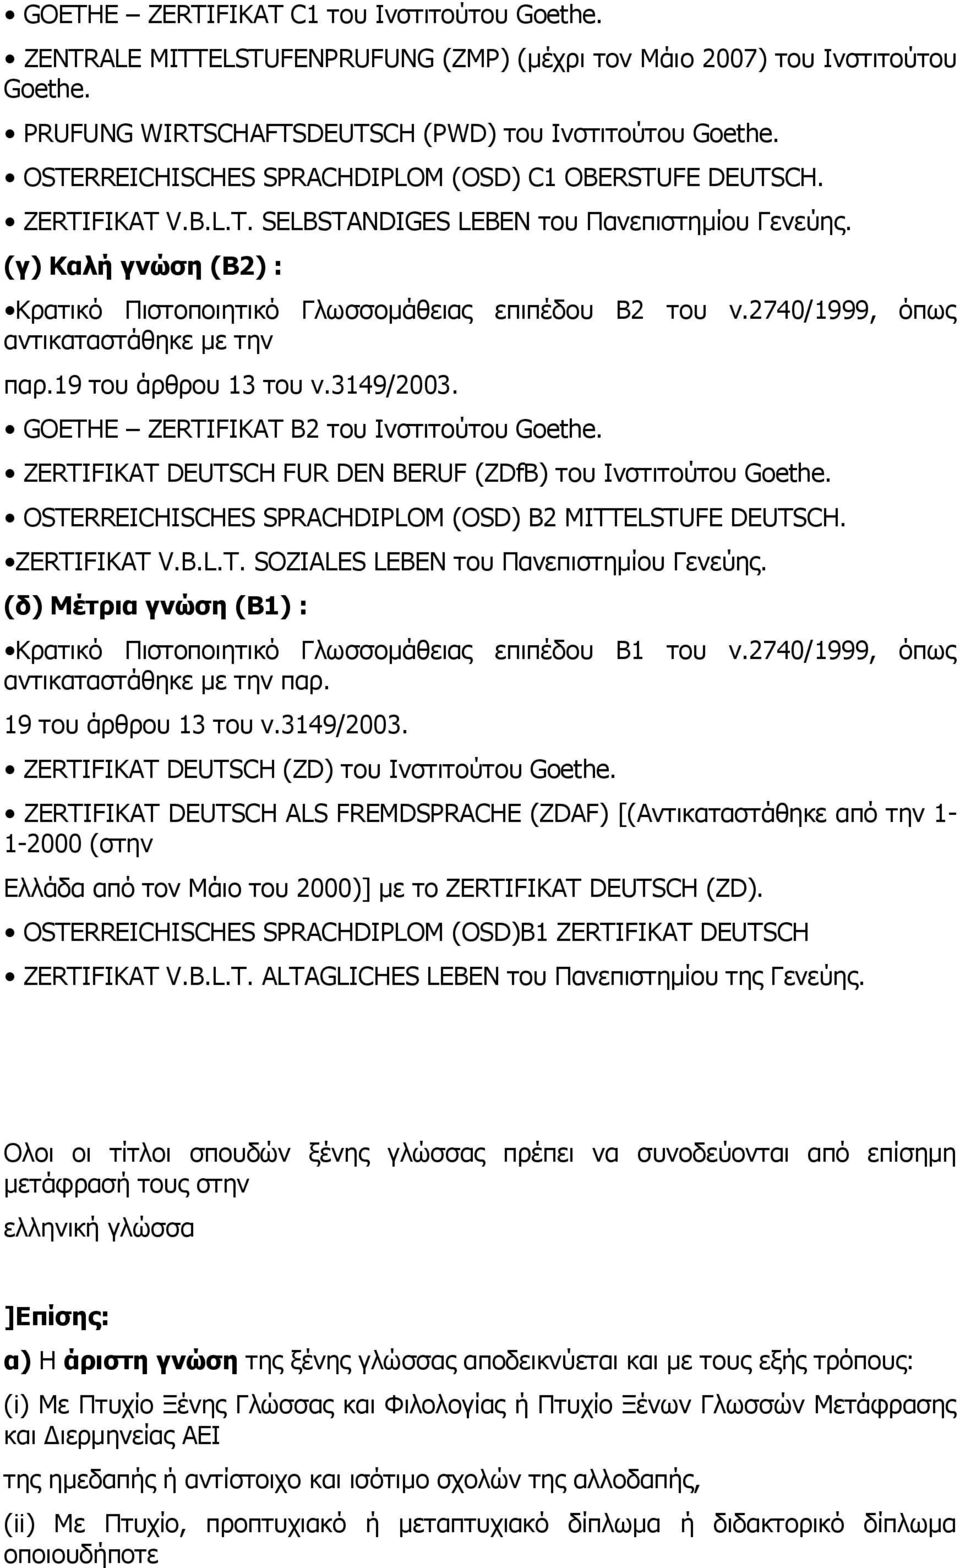 (γ) Καλή γνώση (Β2) : Κρατικό Πιστοποιητικό Γλωσσομάθειας επιπέδου Β2 του ν.2740/1999, όπως αντικαταστάθηκε με την παρ.19 του άρθρου 13 του ν.3149/2003. GOETHE ZERTIFIKAT B2 του Ινστιτούτου Goethe.